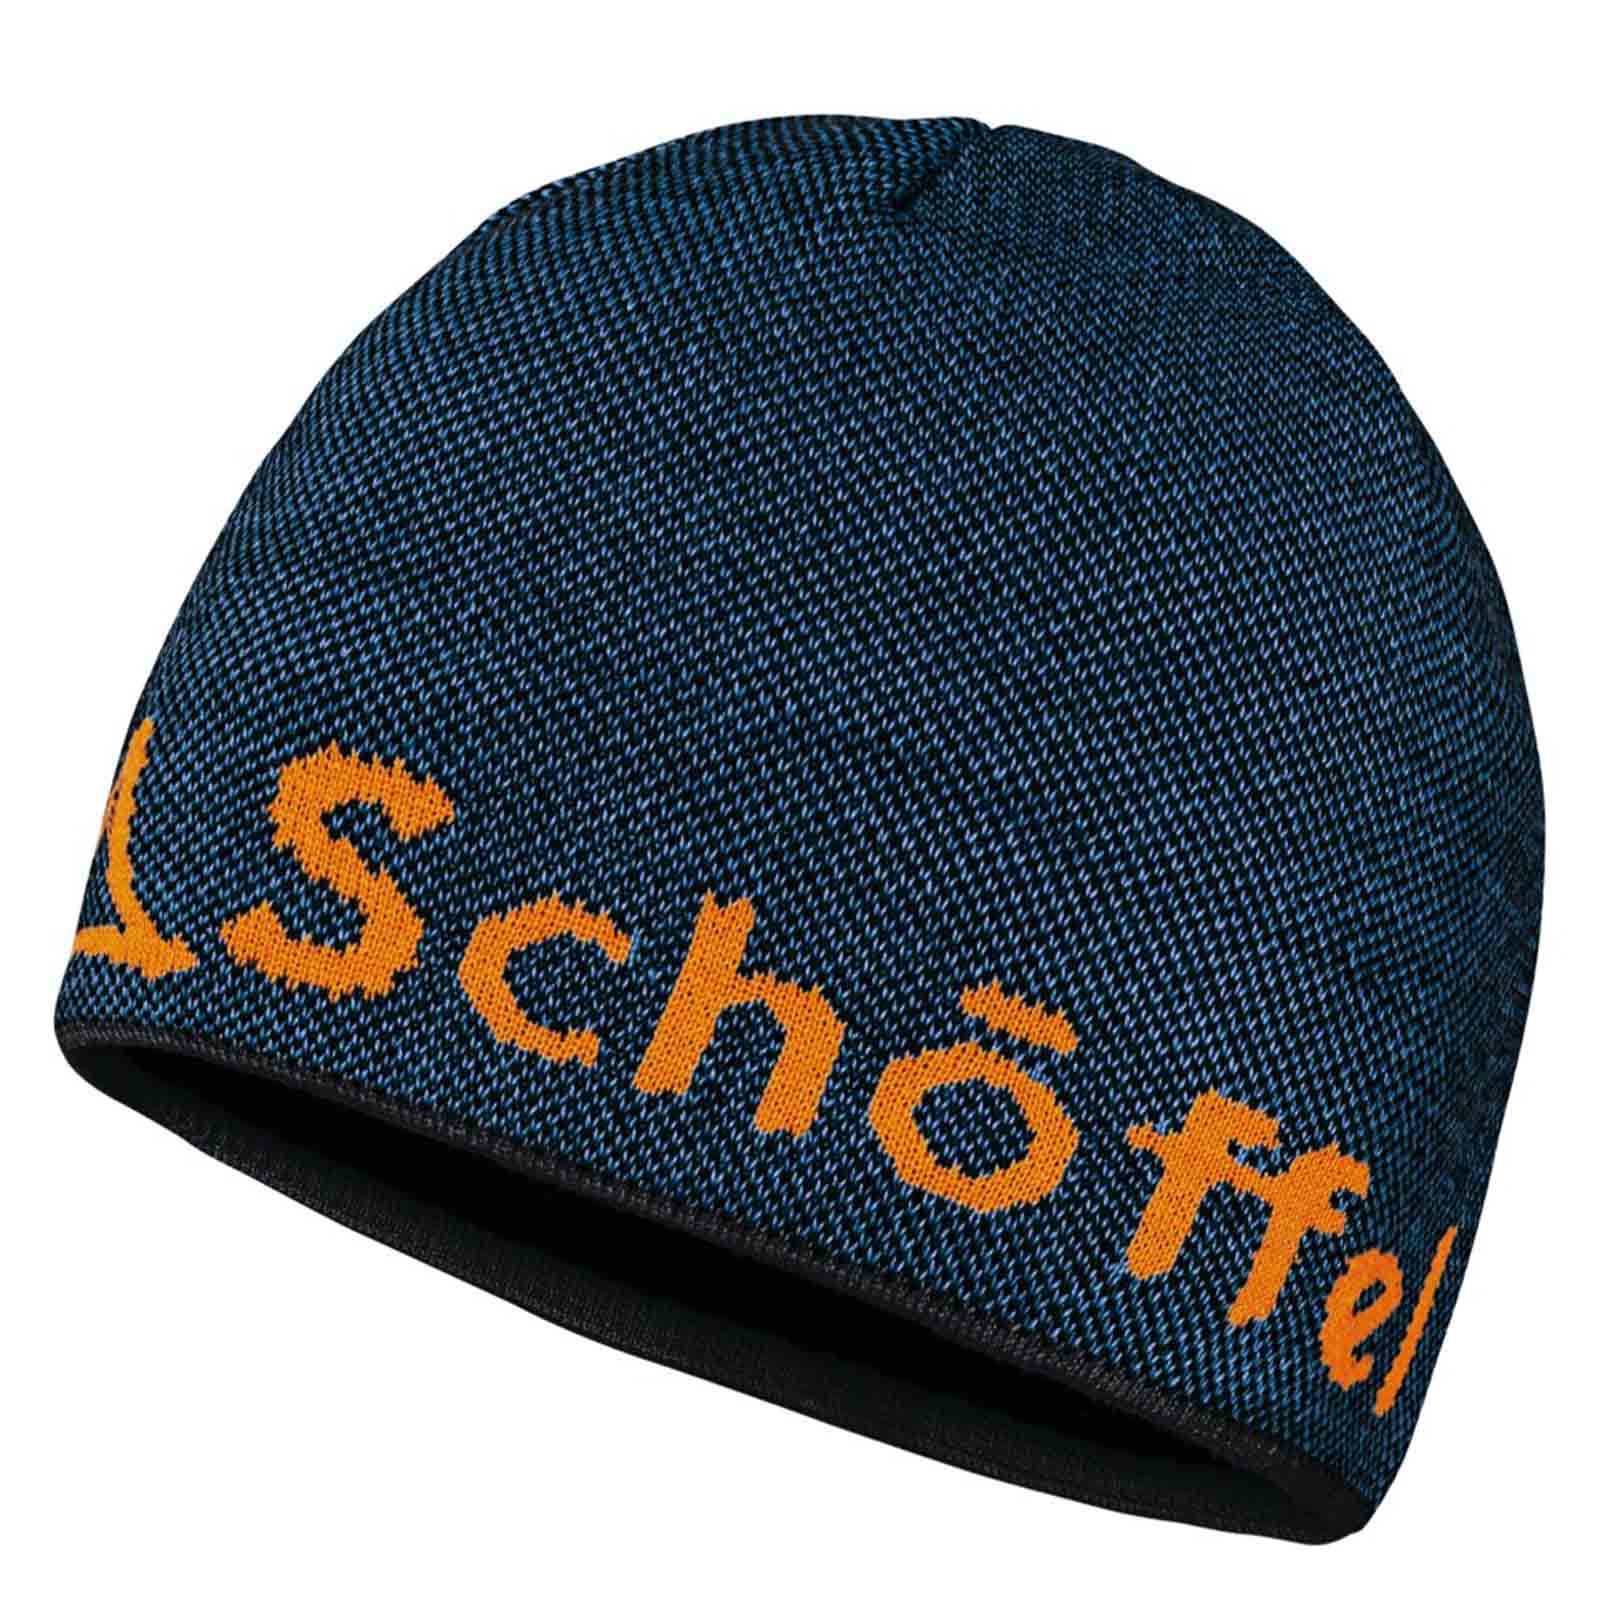 Schöffel Knitted Hat Klinovec Mütze braun